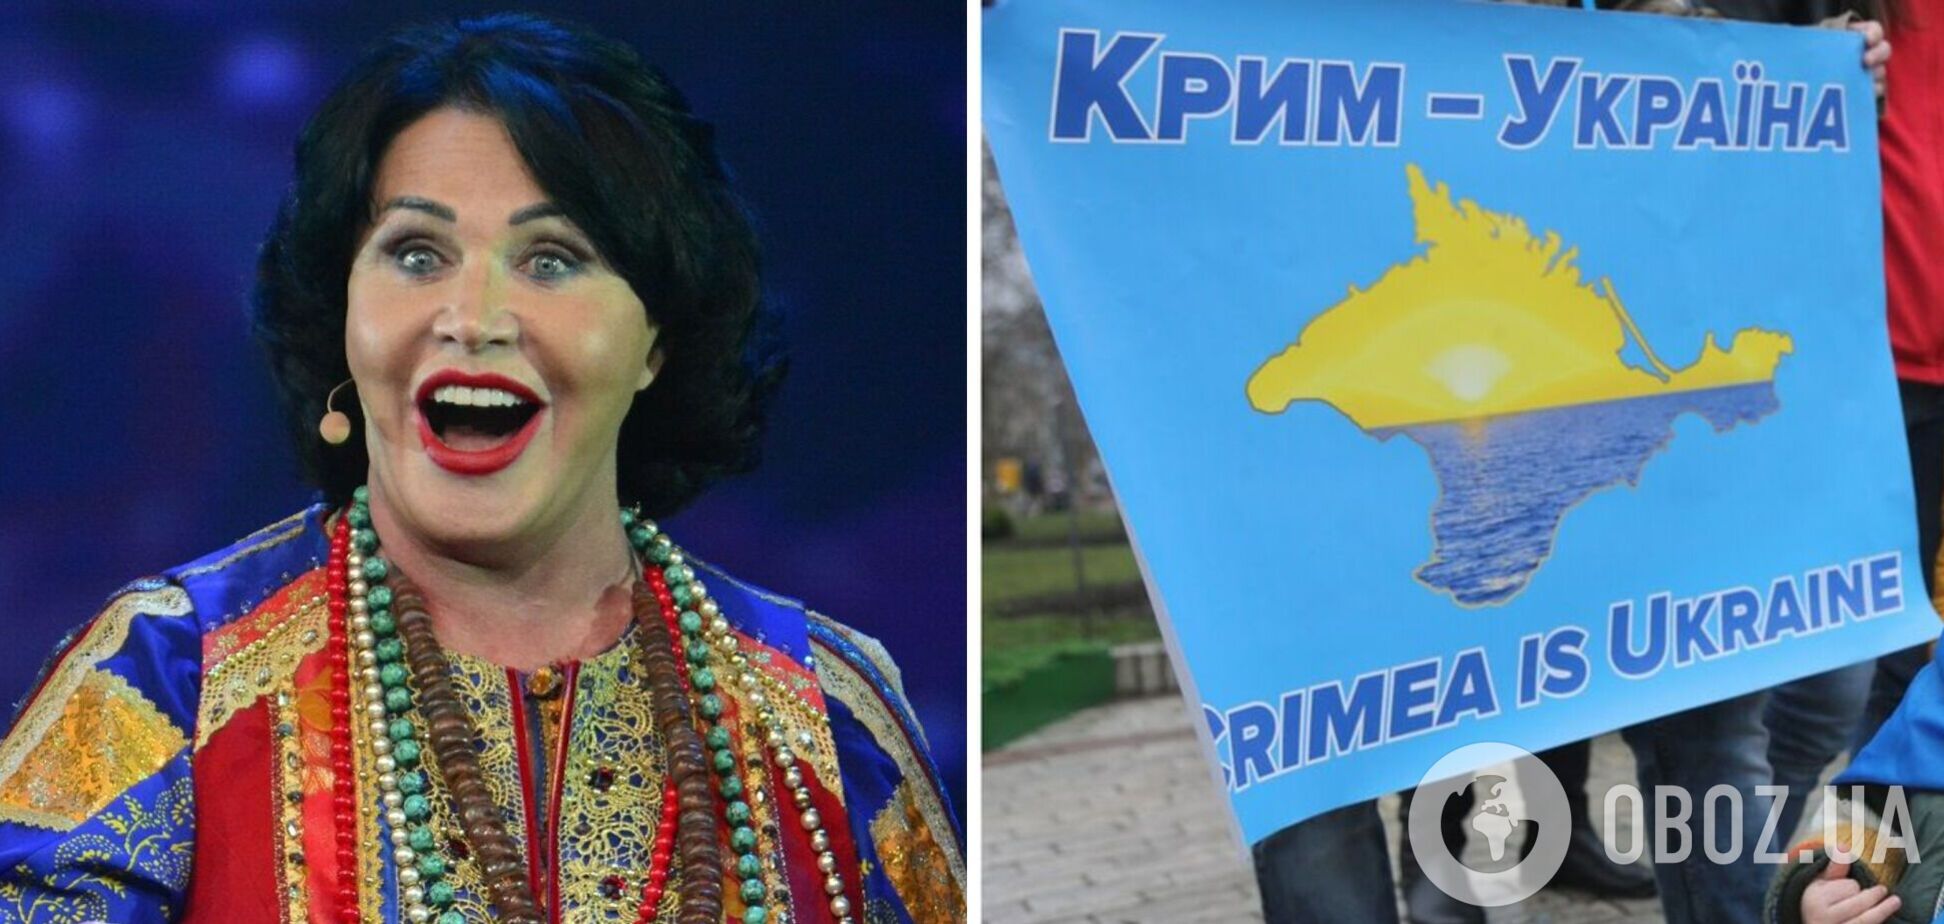 Путинистка Бабкина похвасталась отдыхом в оккупированном Крыму, называя его российским: украинцы поставили ее на место